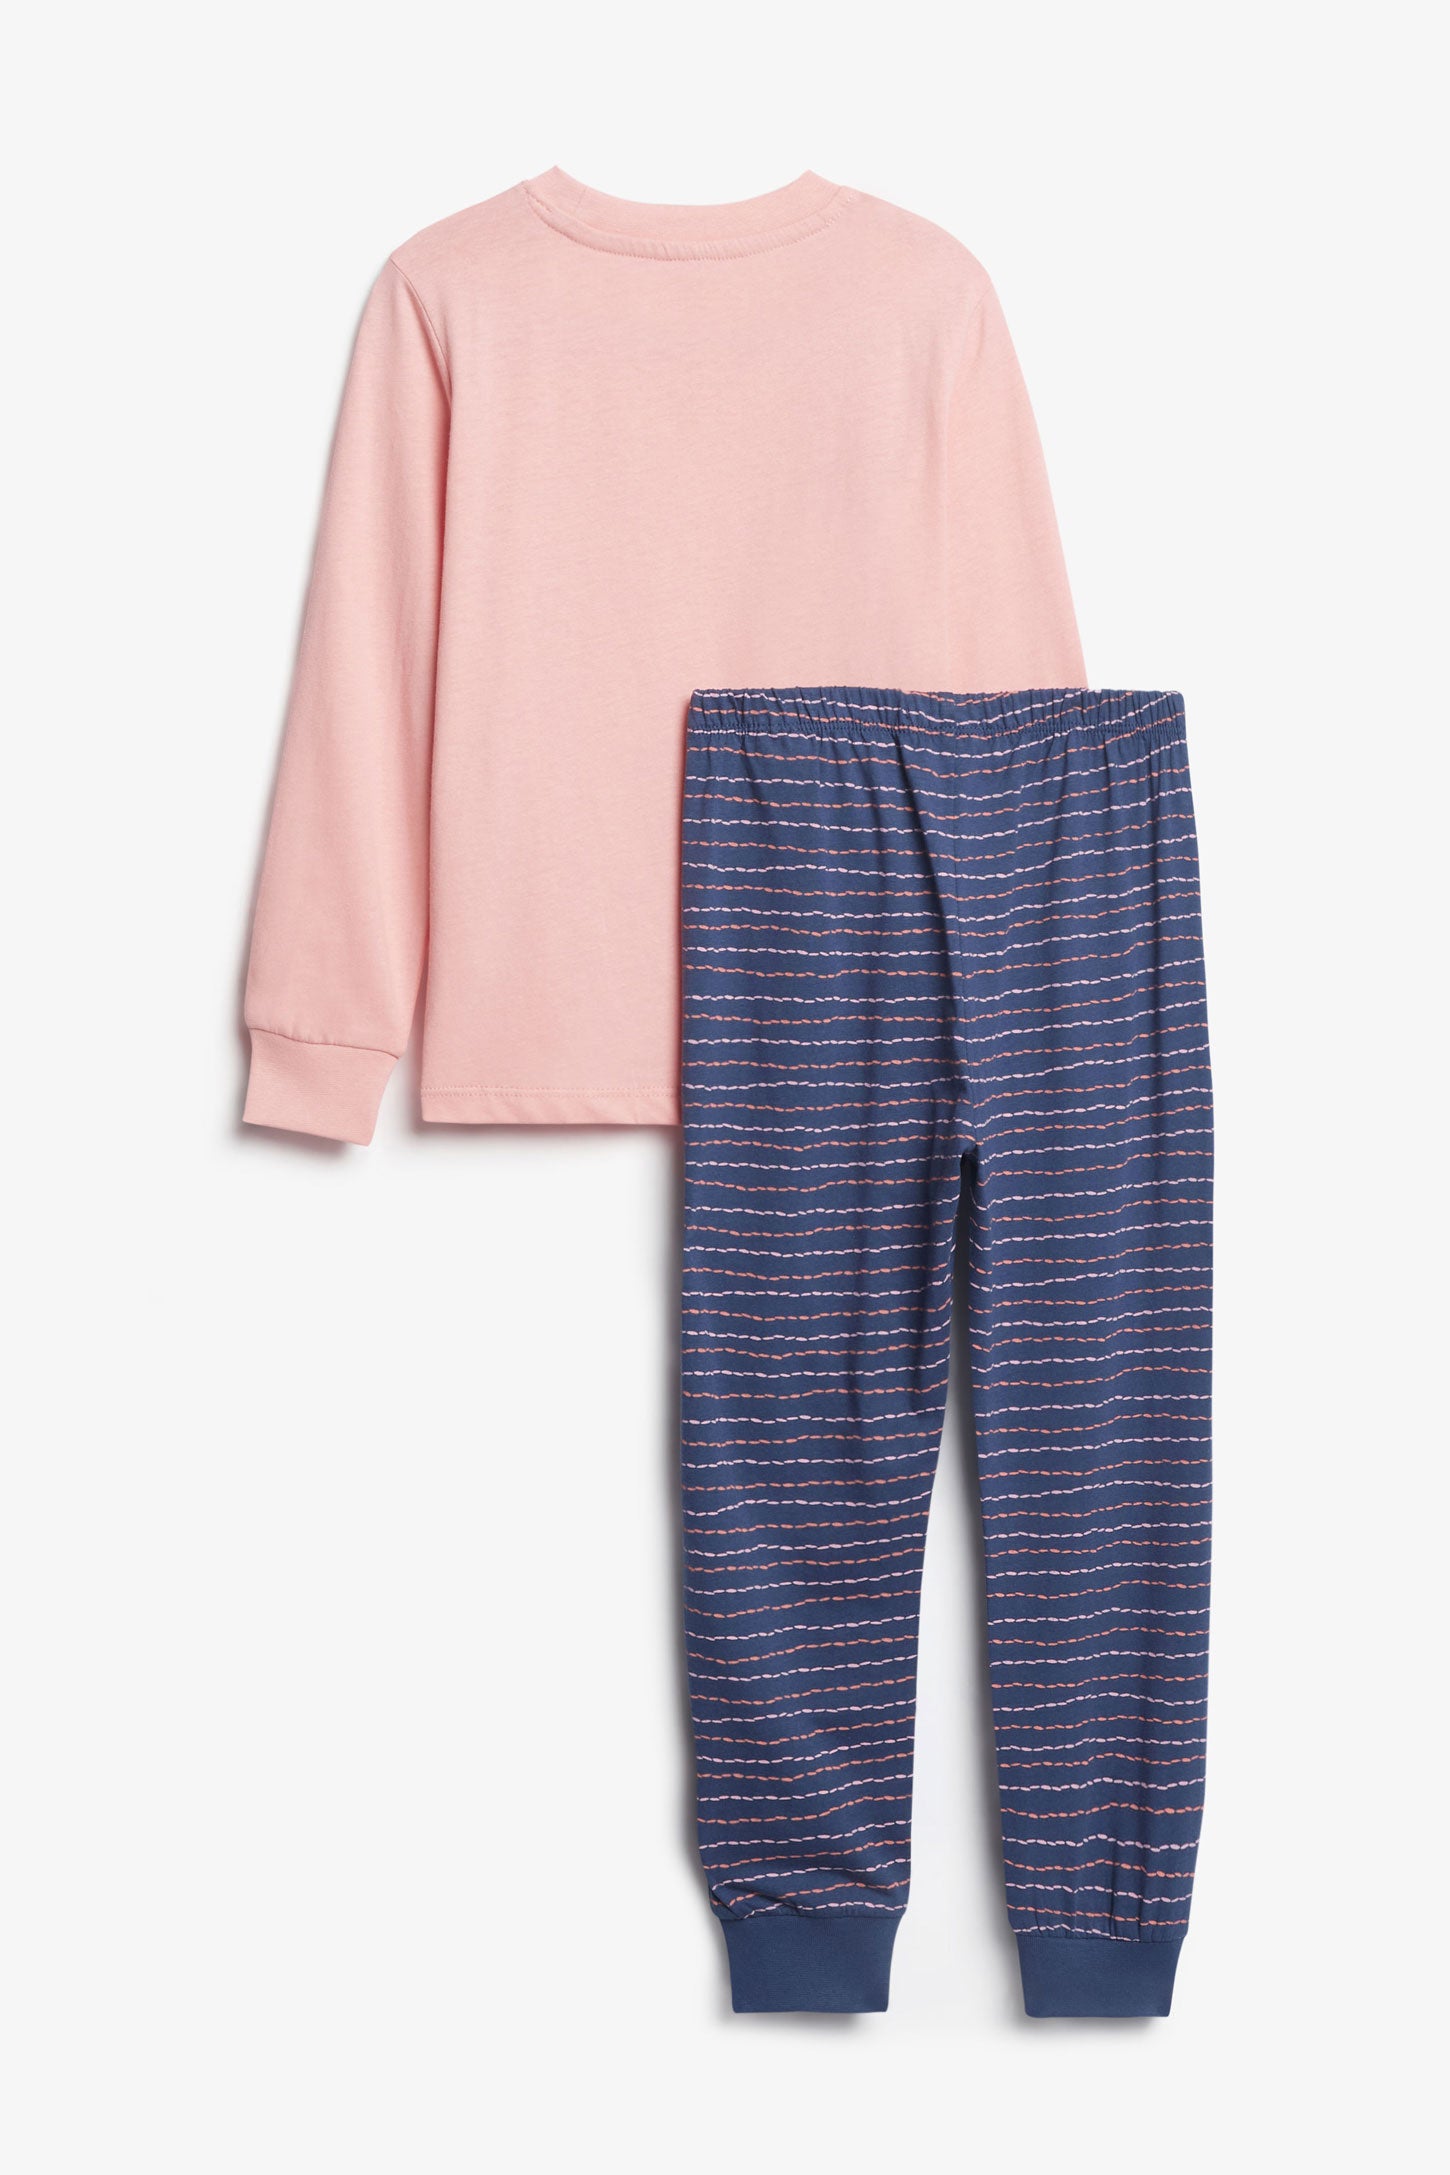 Duos futés, Pyjama 2-pièces en coton, 2/35$ - Enfant fille && ROSE FONCE